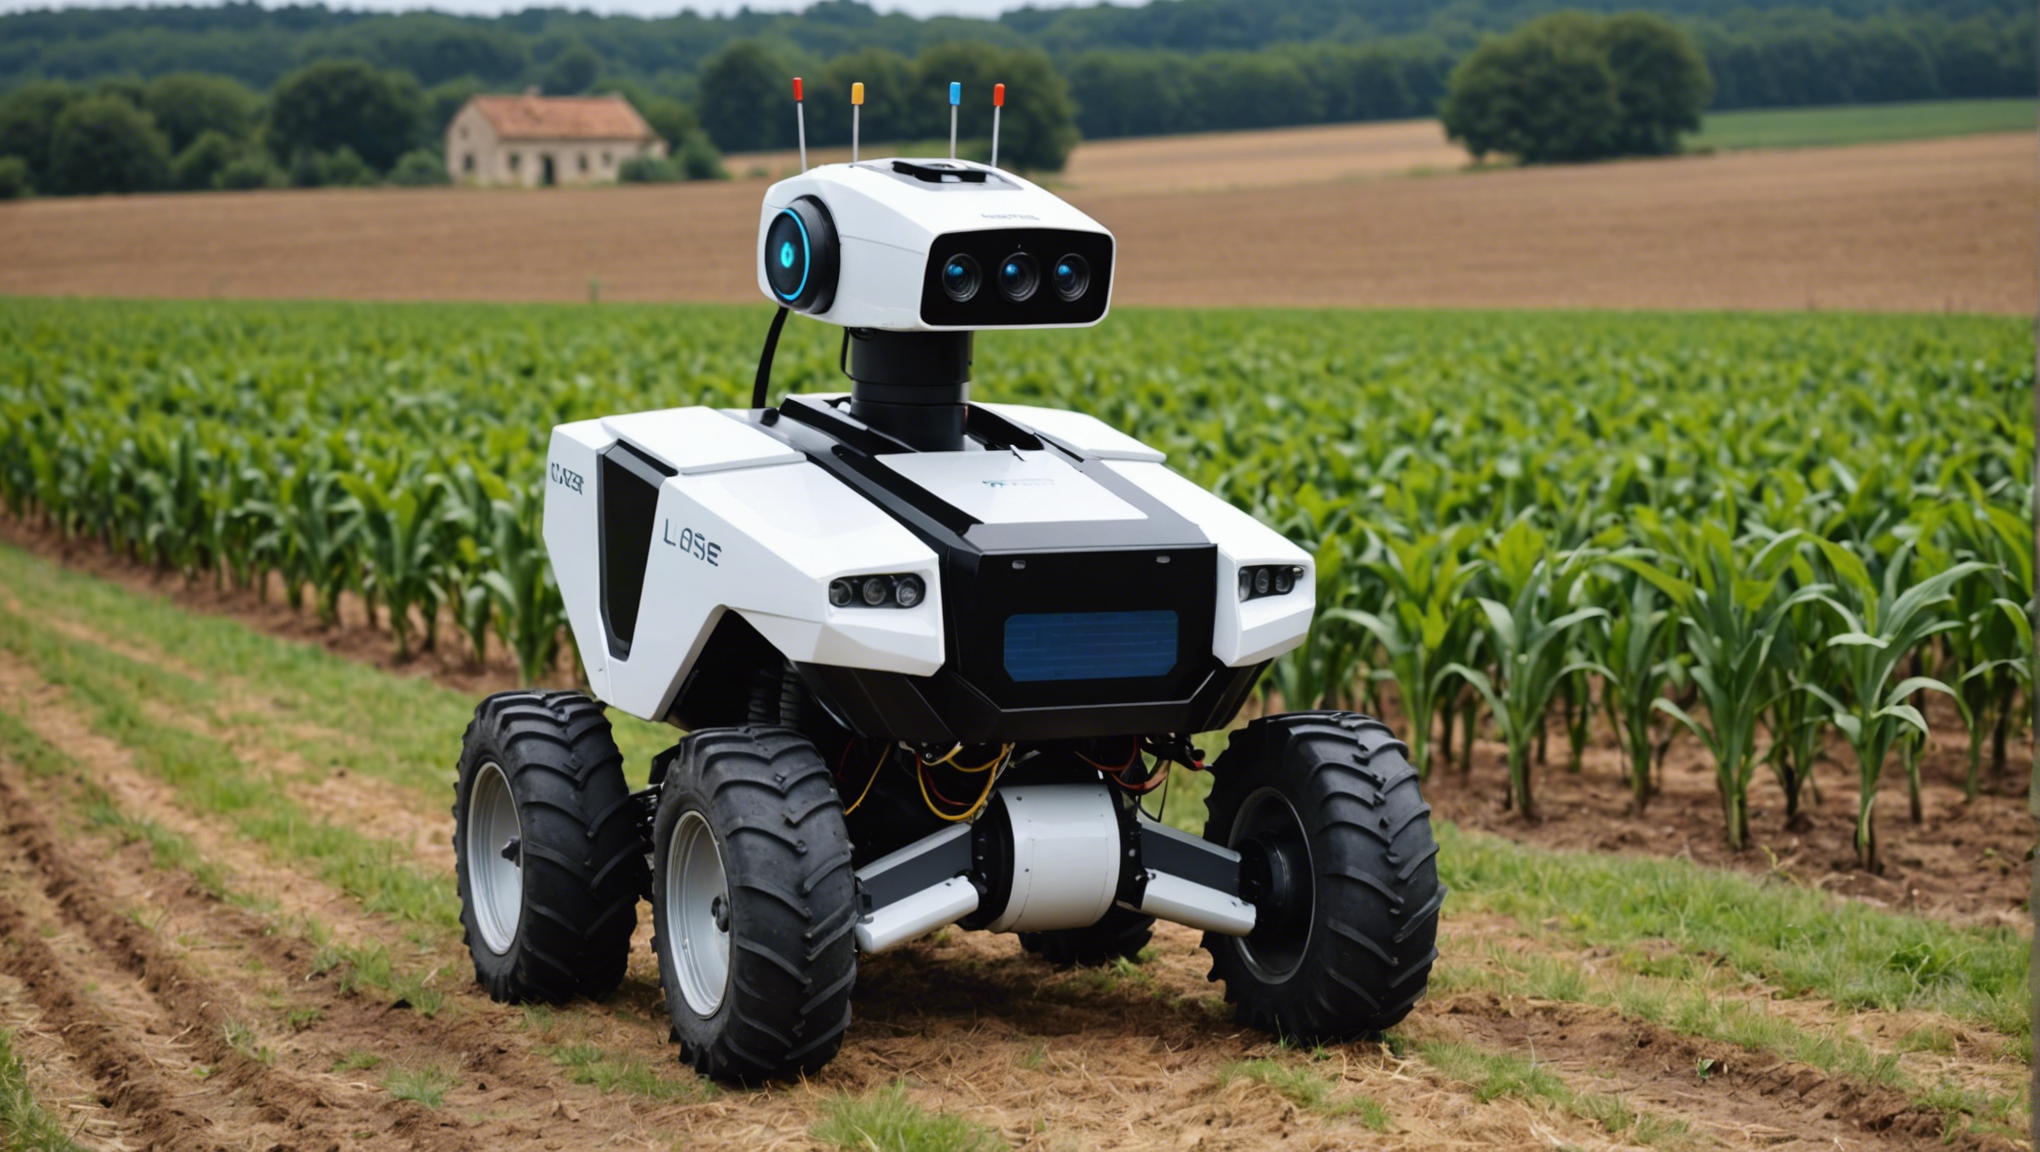 louez un robot en ardèche et découvrez la révolution technologique au service de l'agriculture. profitez des avantages de la location d'équipements agricoles innovants.